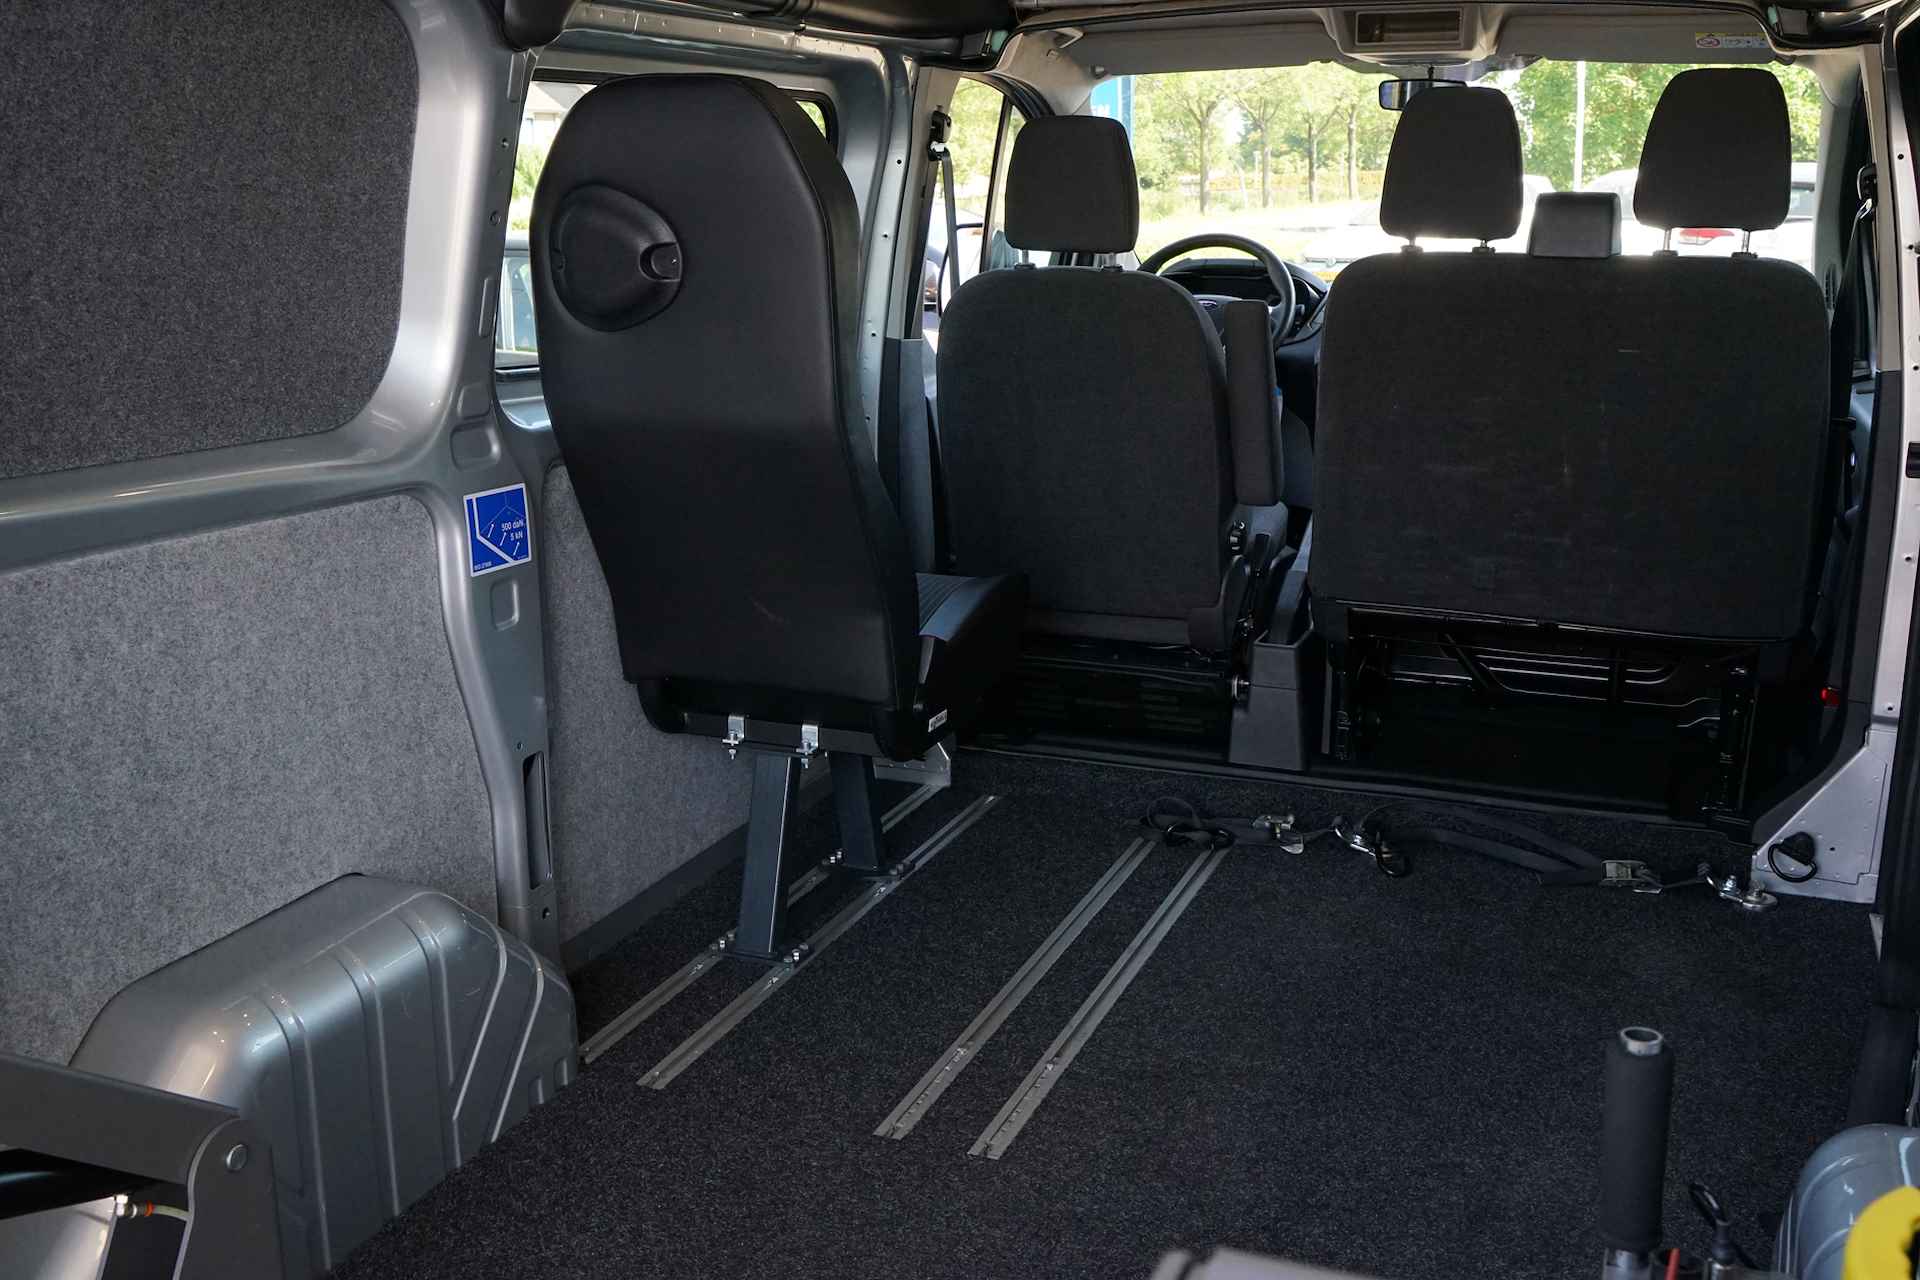 Ford Transit Custom 270 2.2 TDCI L1H2 Trend Lift geschikt voor scootmobiel rolstoel - 9/29